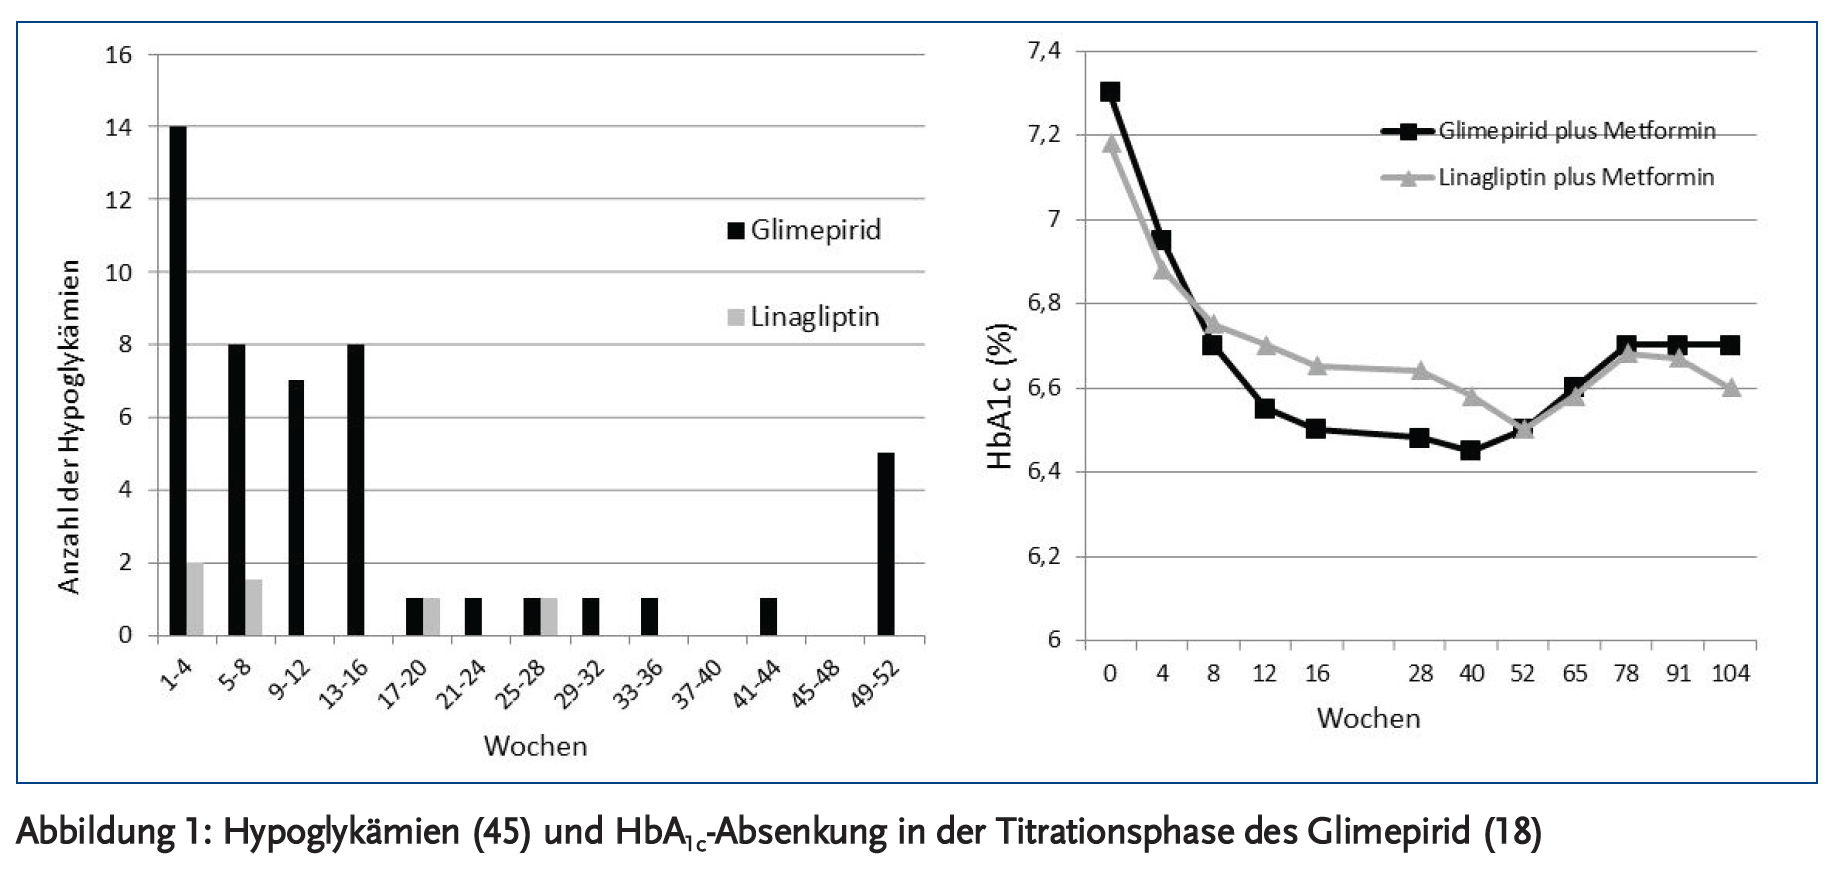 Abbildung 1: Hypoglykämien (45) und HbA<sub>1c</sub>-Absenkung in der Titrationsphase des Glimepirid (18)